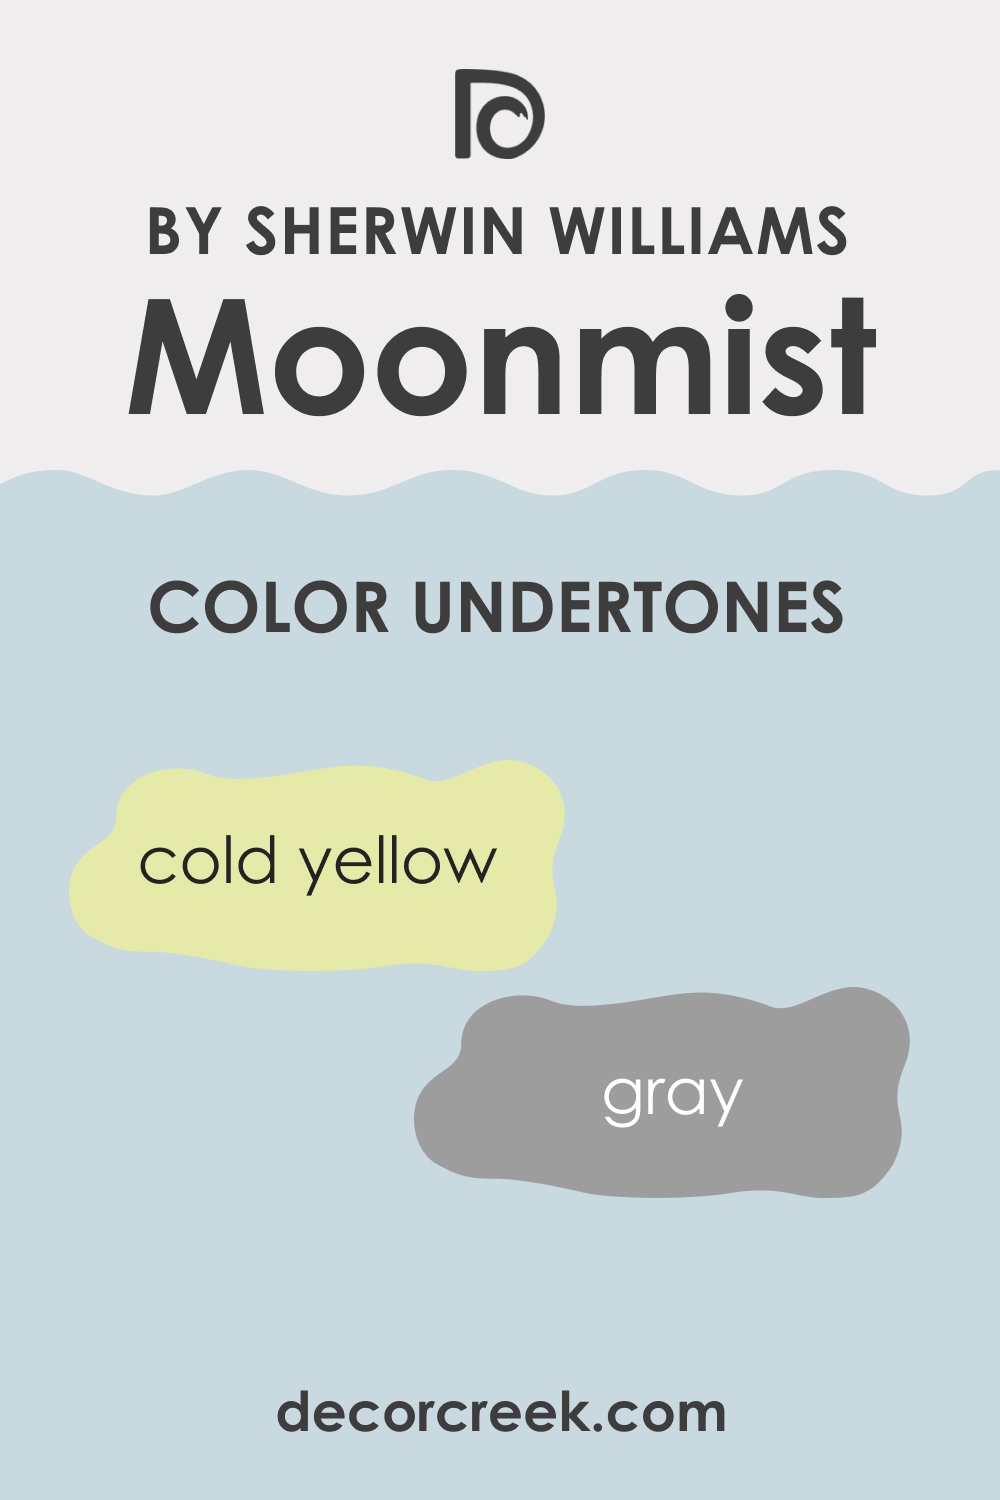 What Undertones Does Moonmist SW-9144 Paint Color Have?